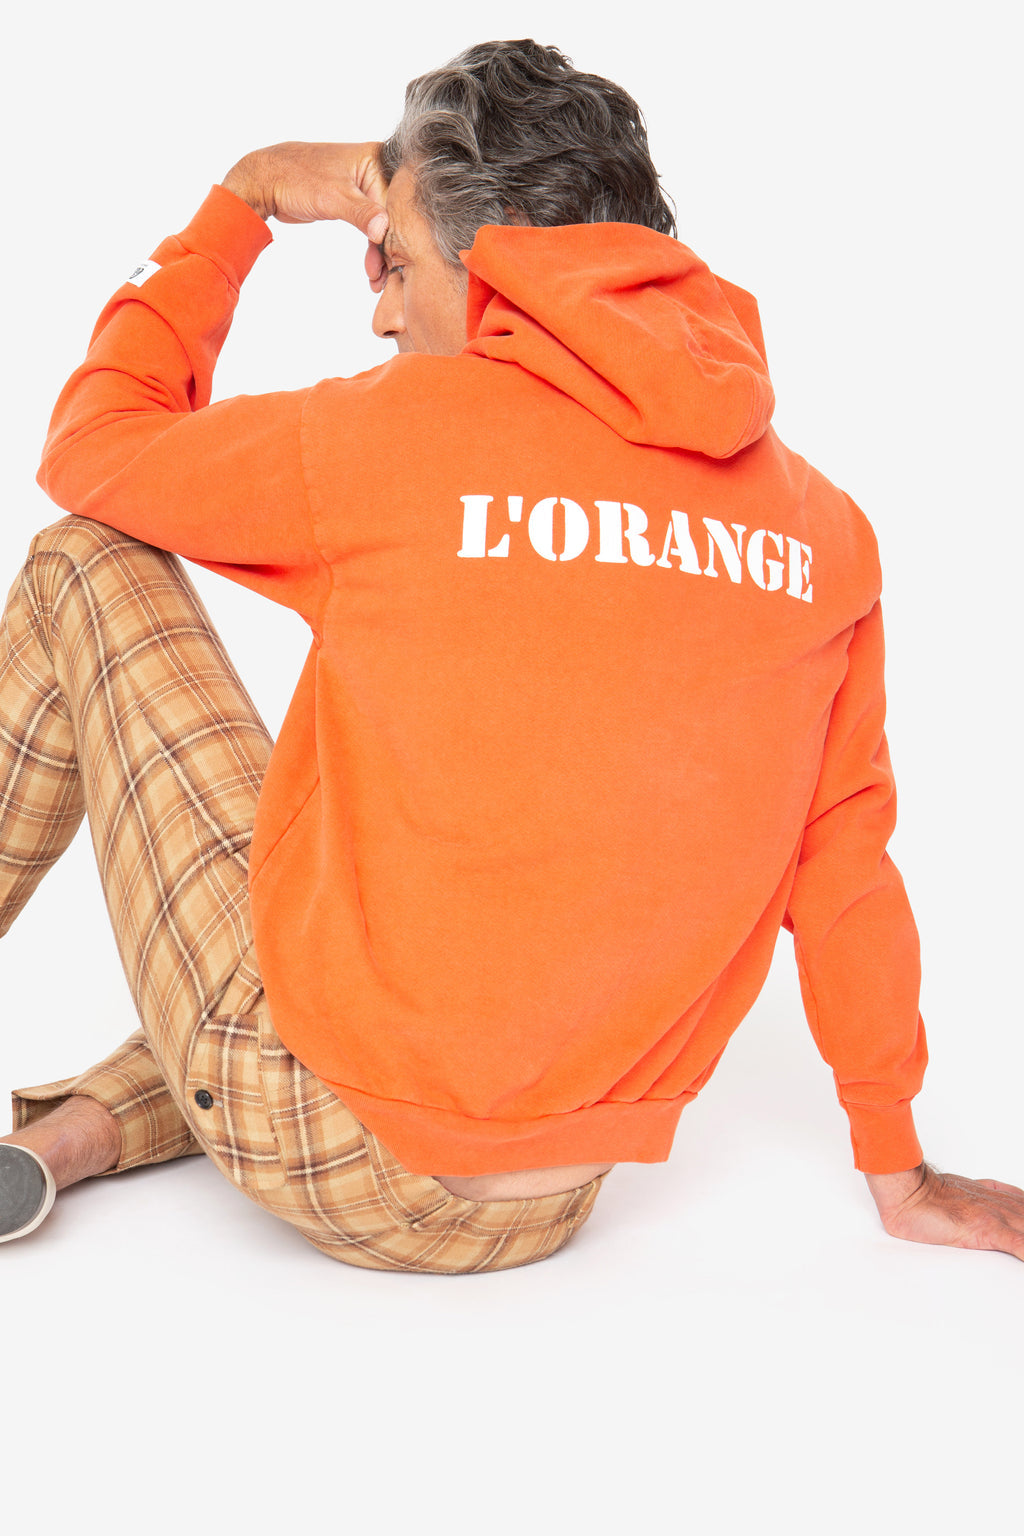 Cloney Hermes L'Orange Long Sleeve Hoodie Sweatshirt